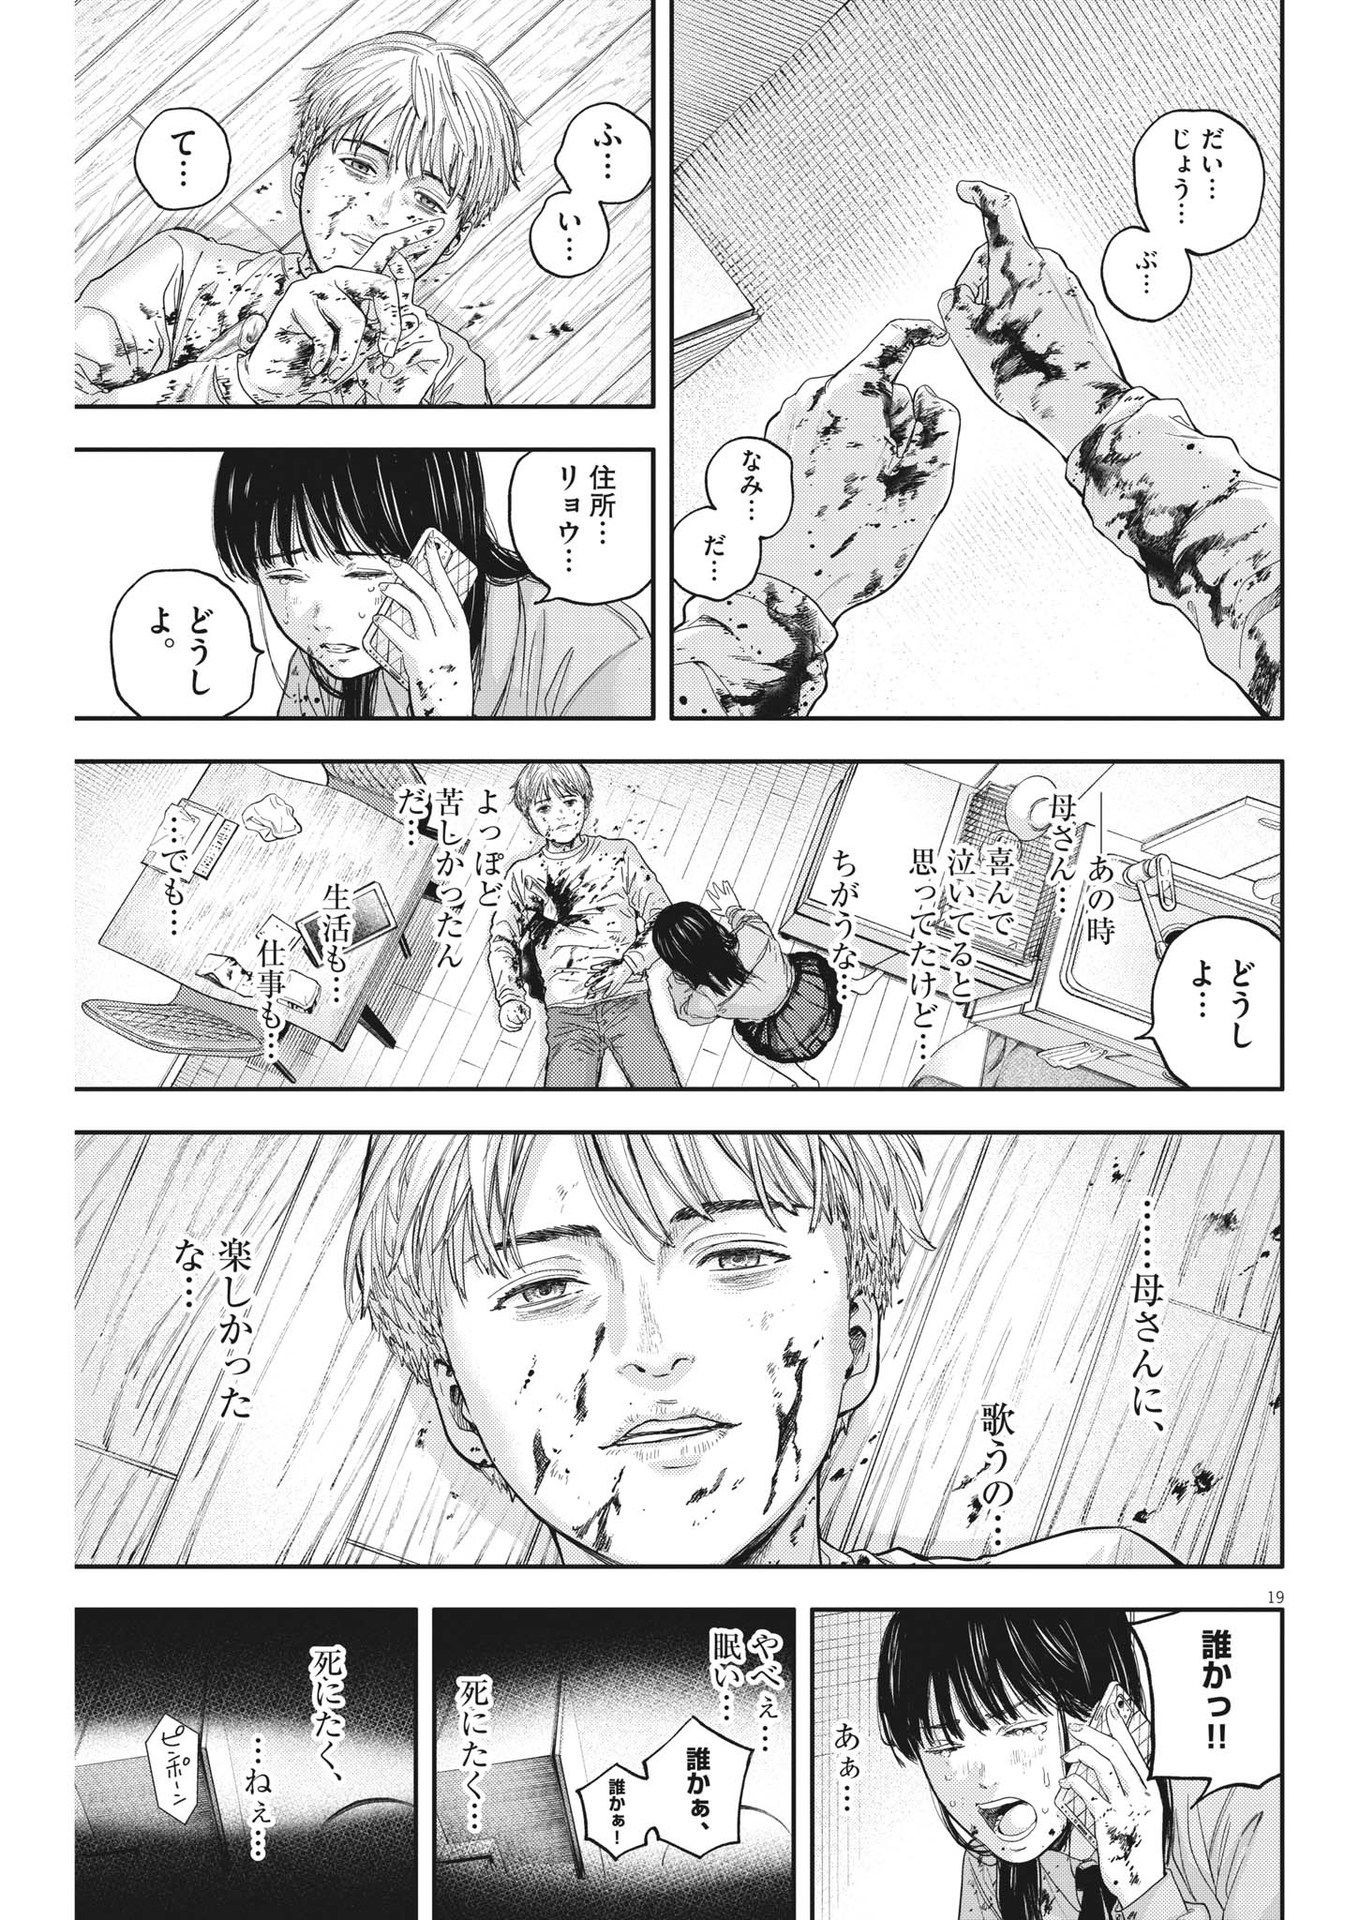 Yumenashi-sensei no Shinroshidou - Chapter 16 - Page 19